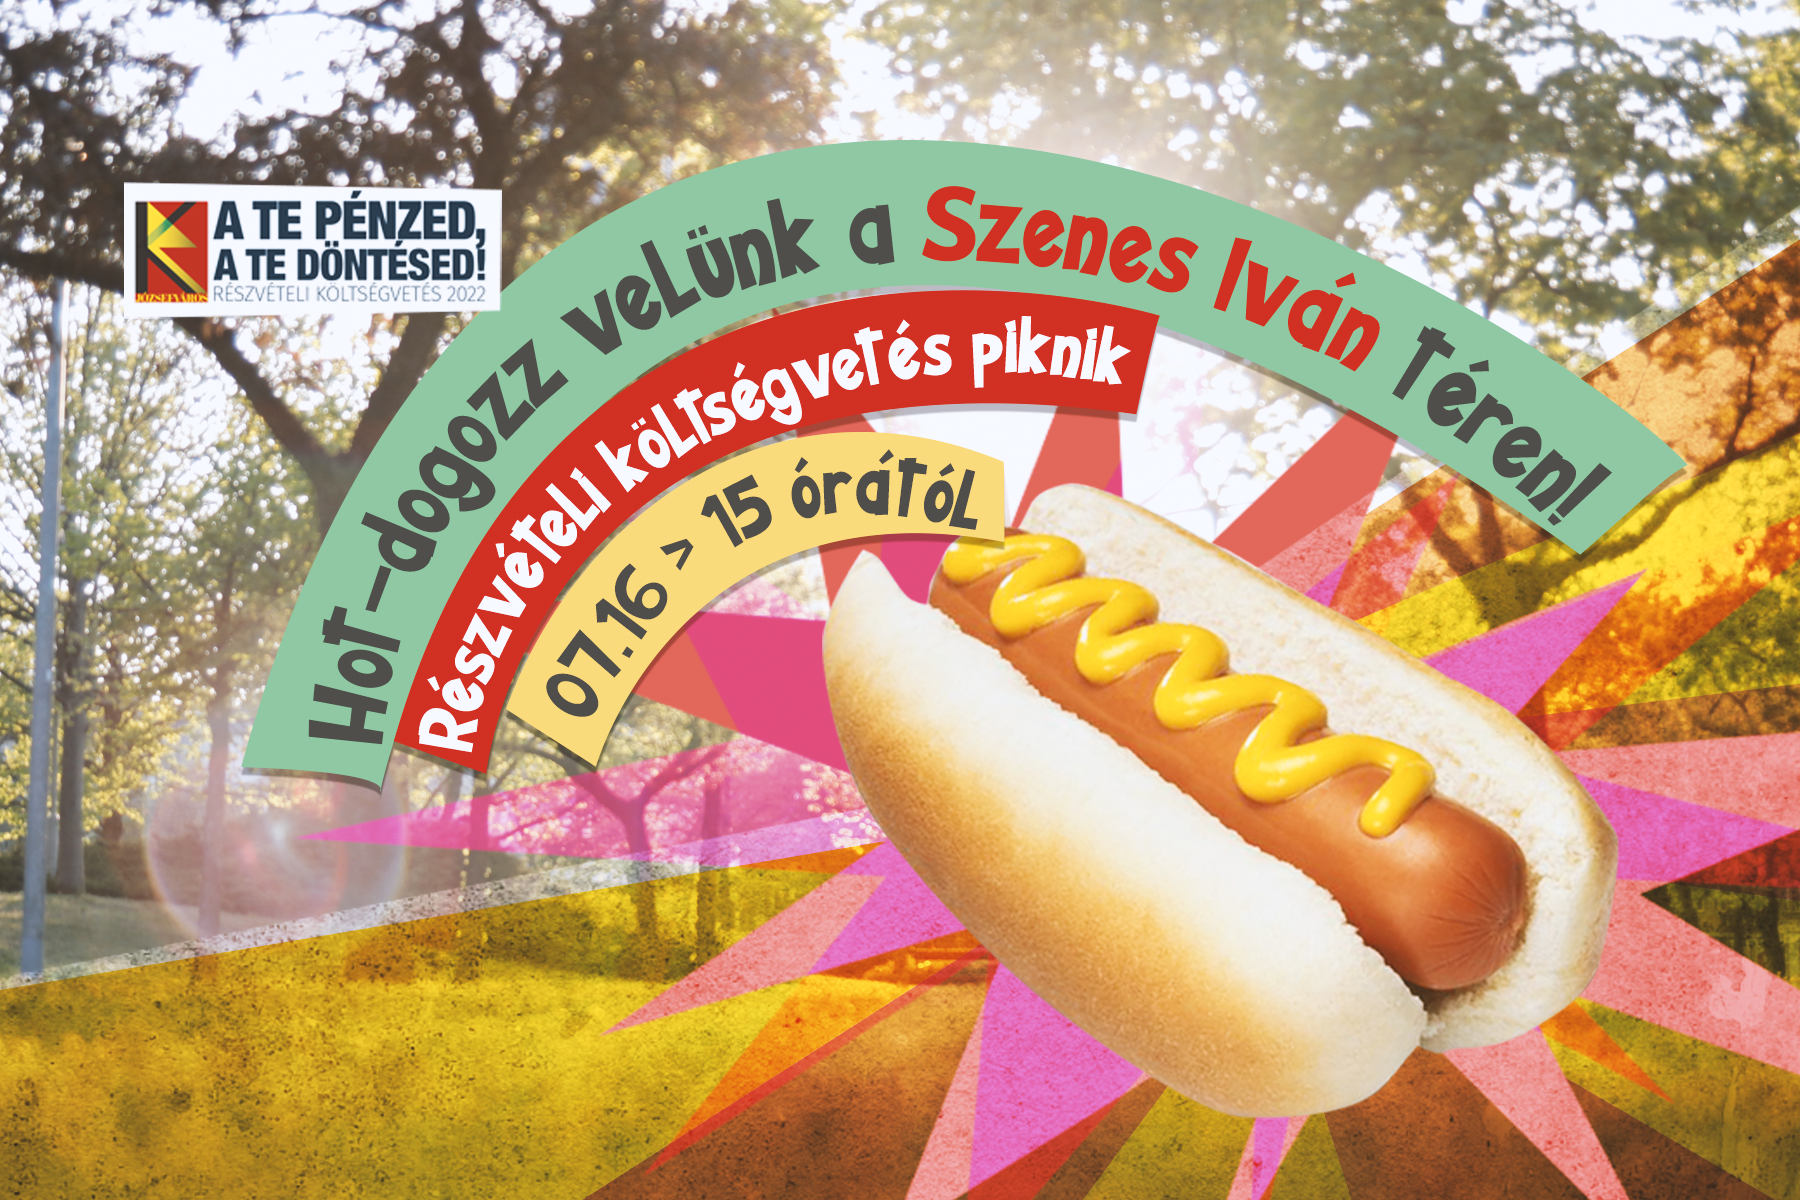 Hot-dogozz velünk a Szenes Iván téren! Részvételi költségvetés piknik